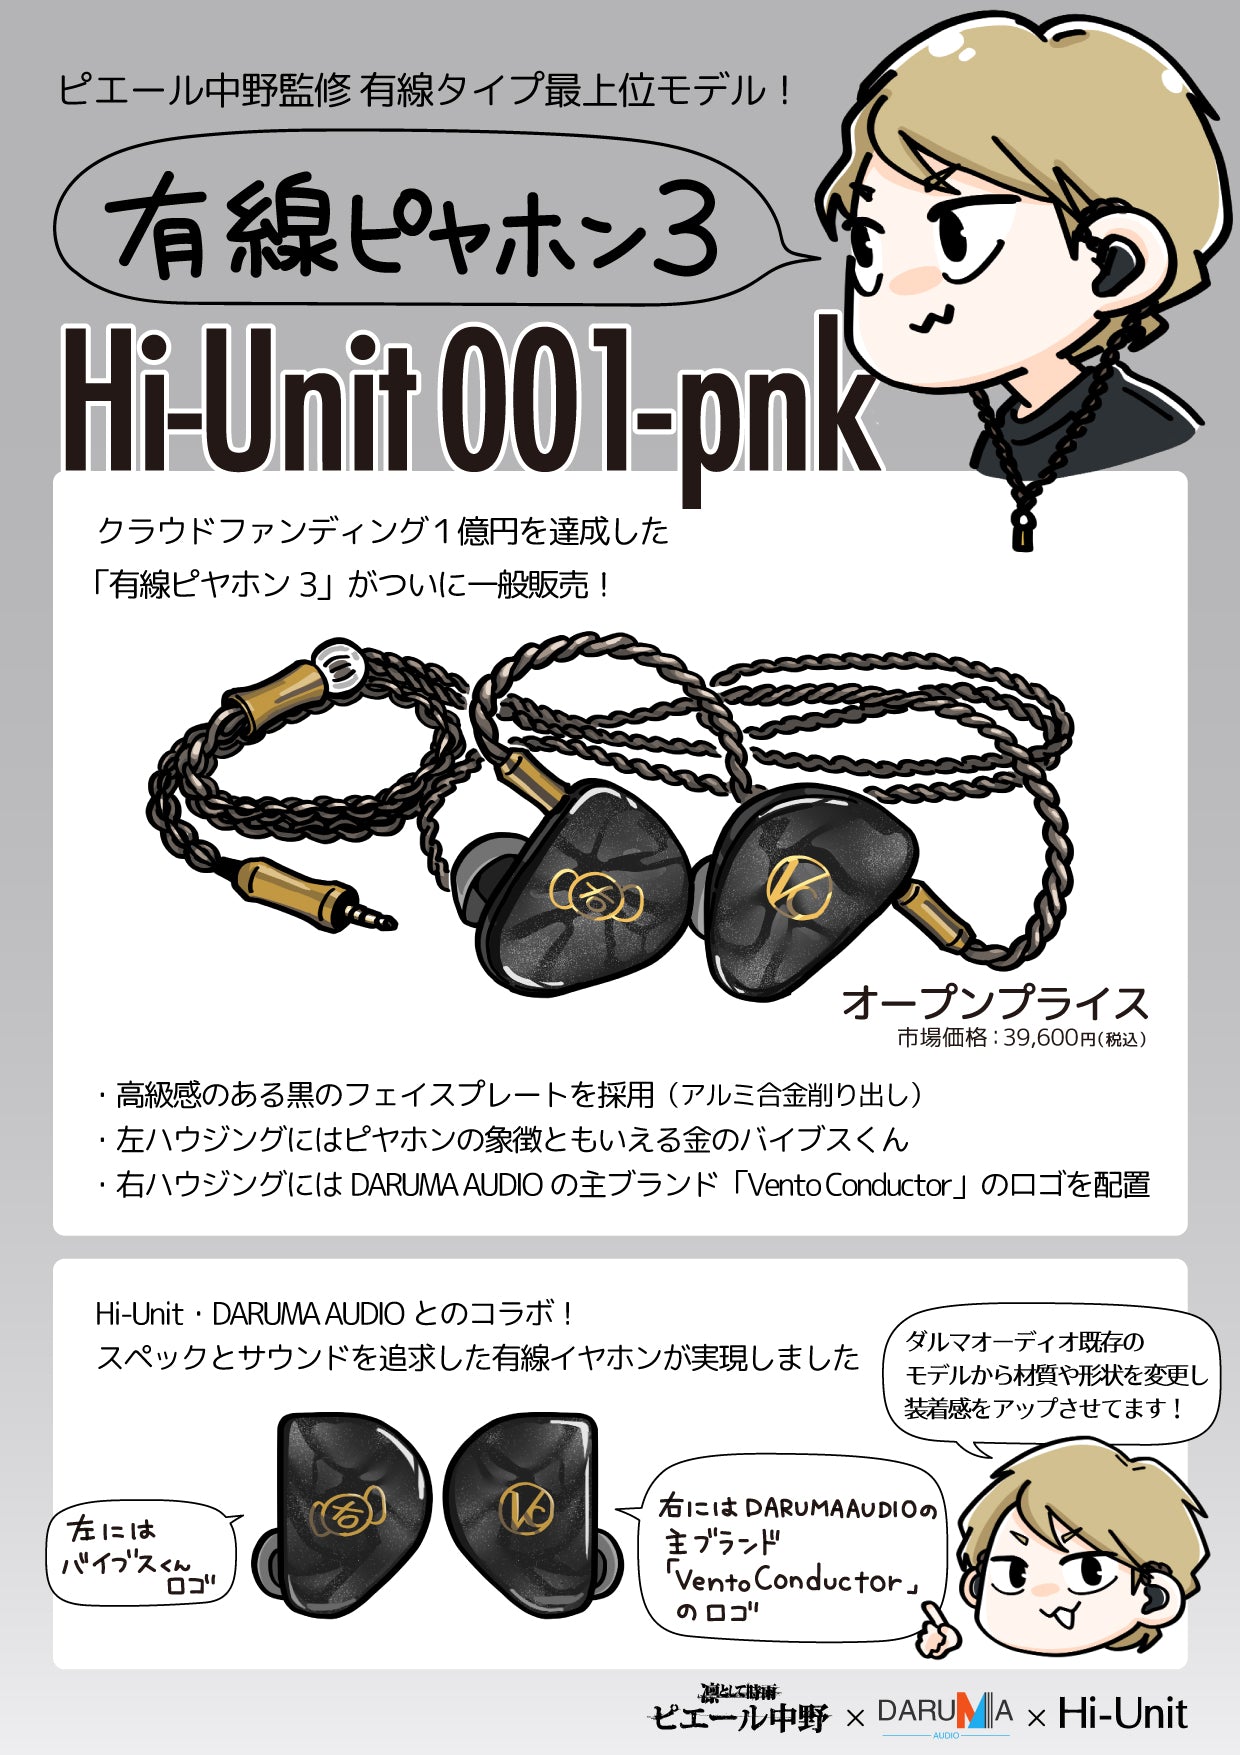 ピヤホン3 Hi-Unit 001-pnk バランスケーブル付き